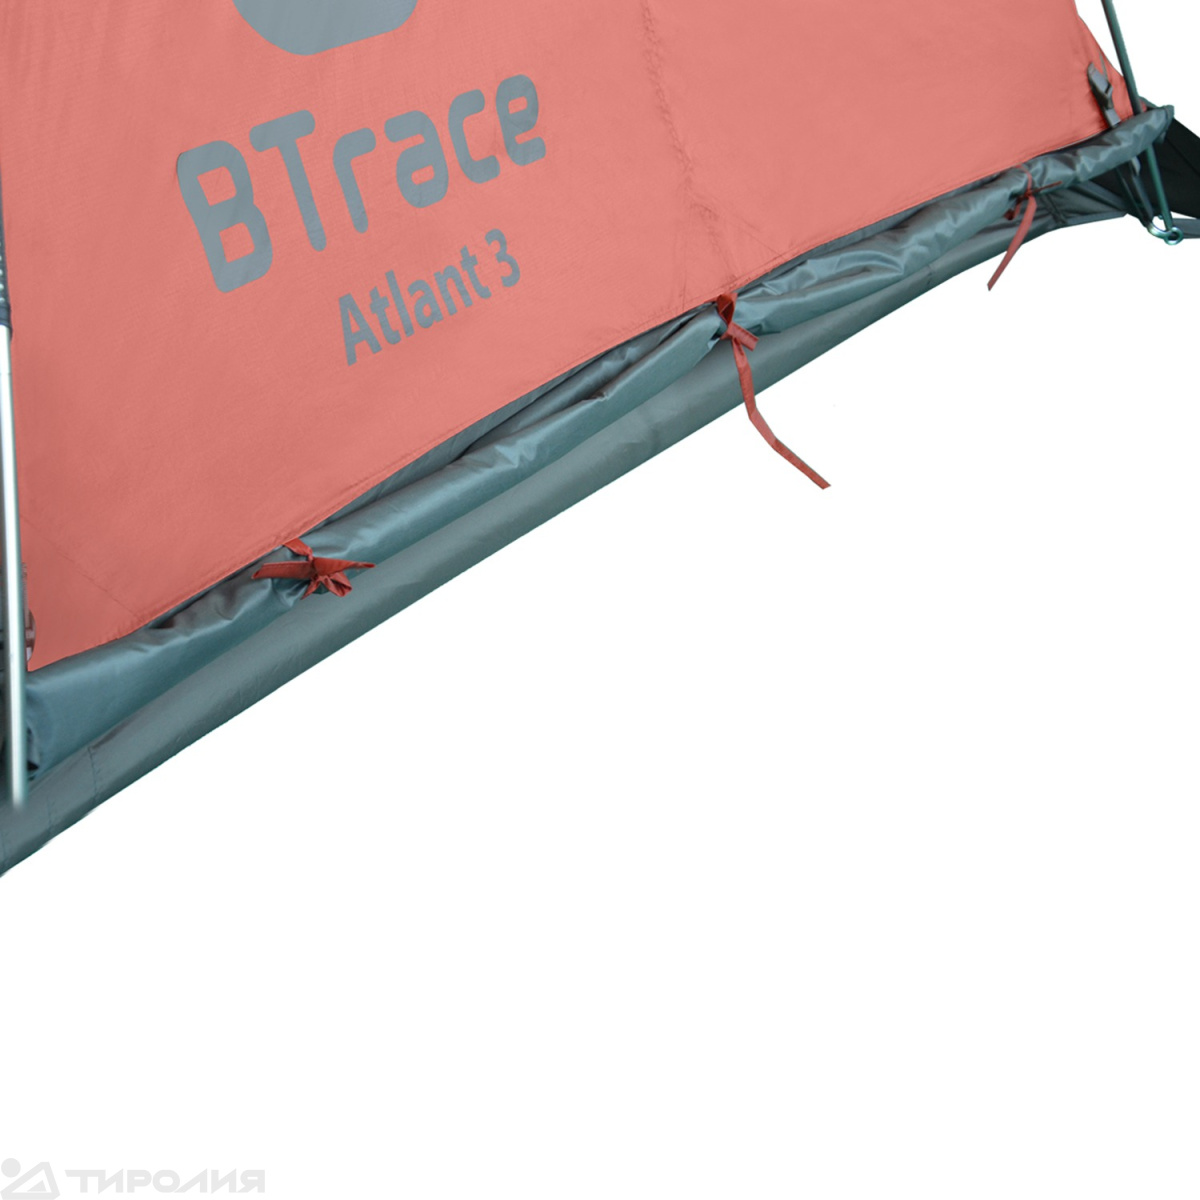 Палатка Btrace: Atlant 3 (Красный)